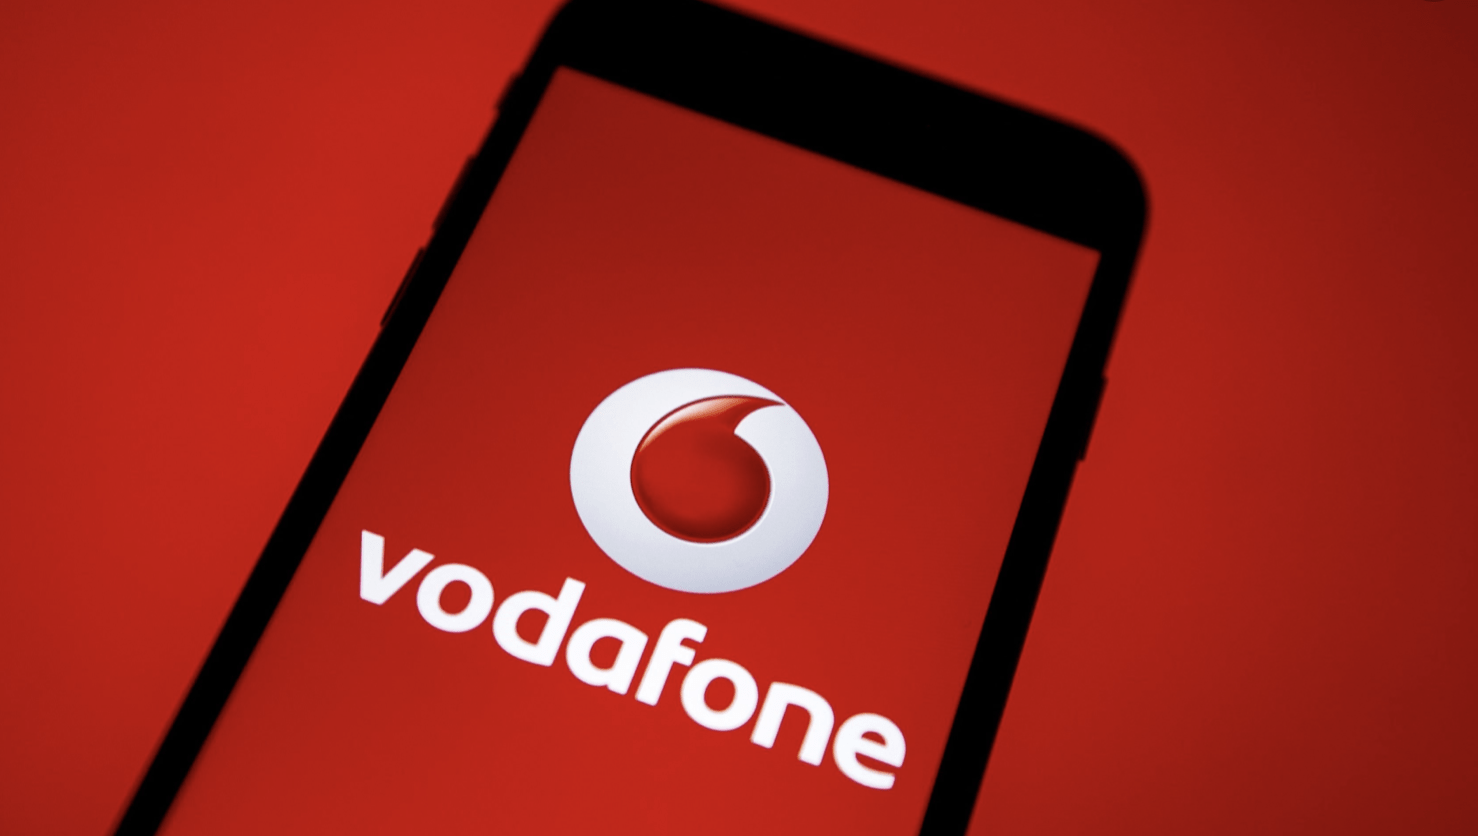 Vodafone offre il massimo: giga illimitati in regalo e tre offerte Special